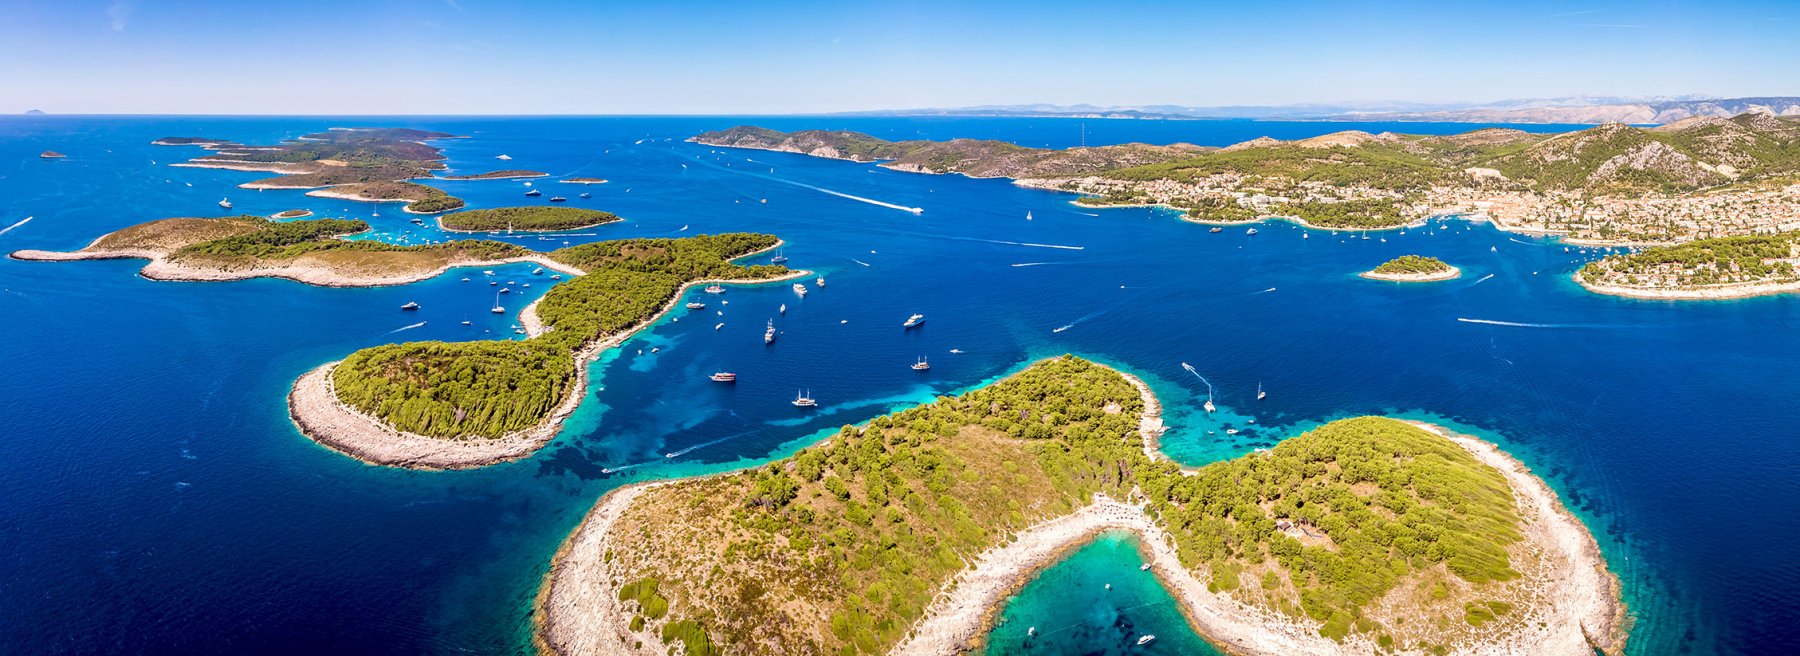 Ferienhäuser für 10 Personen in Kroatien